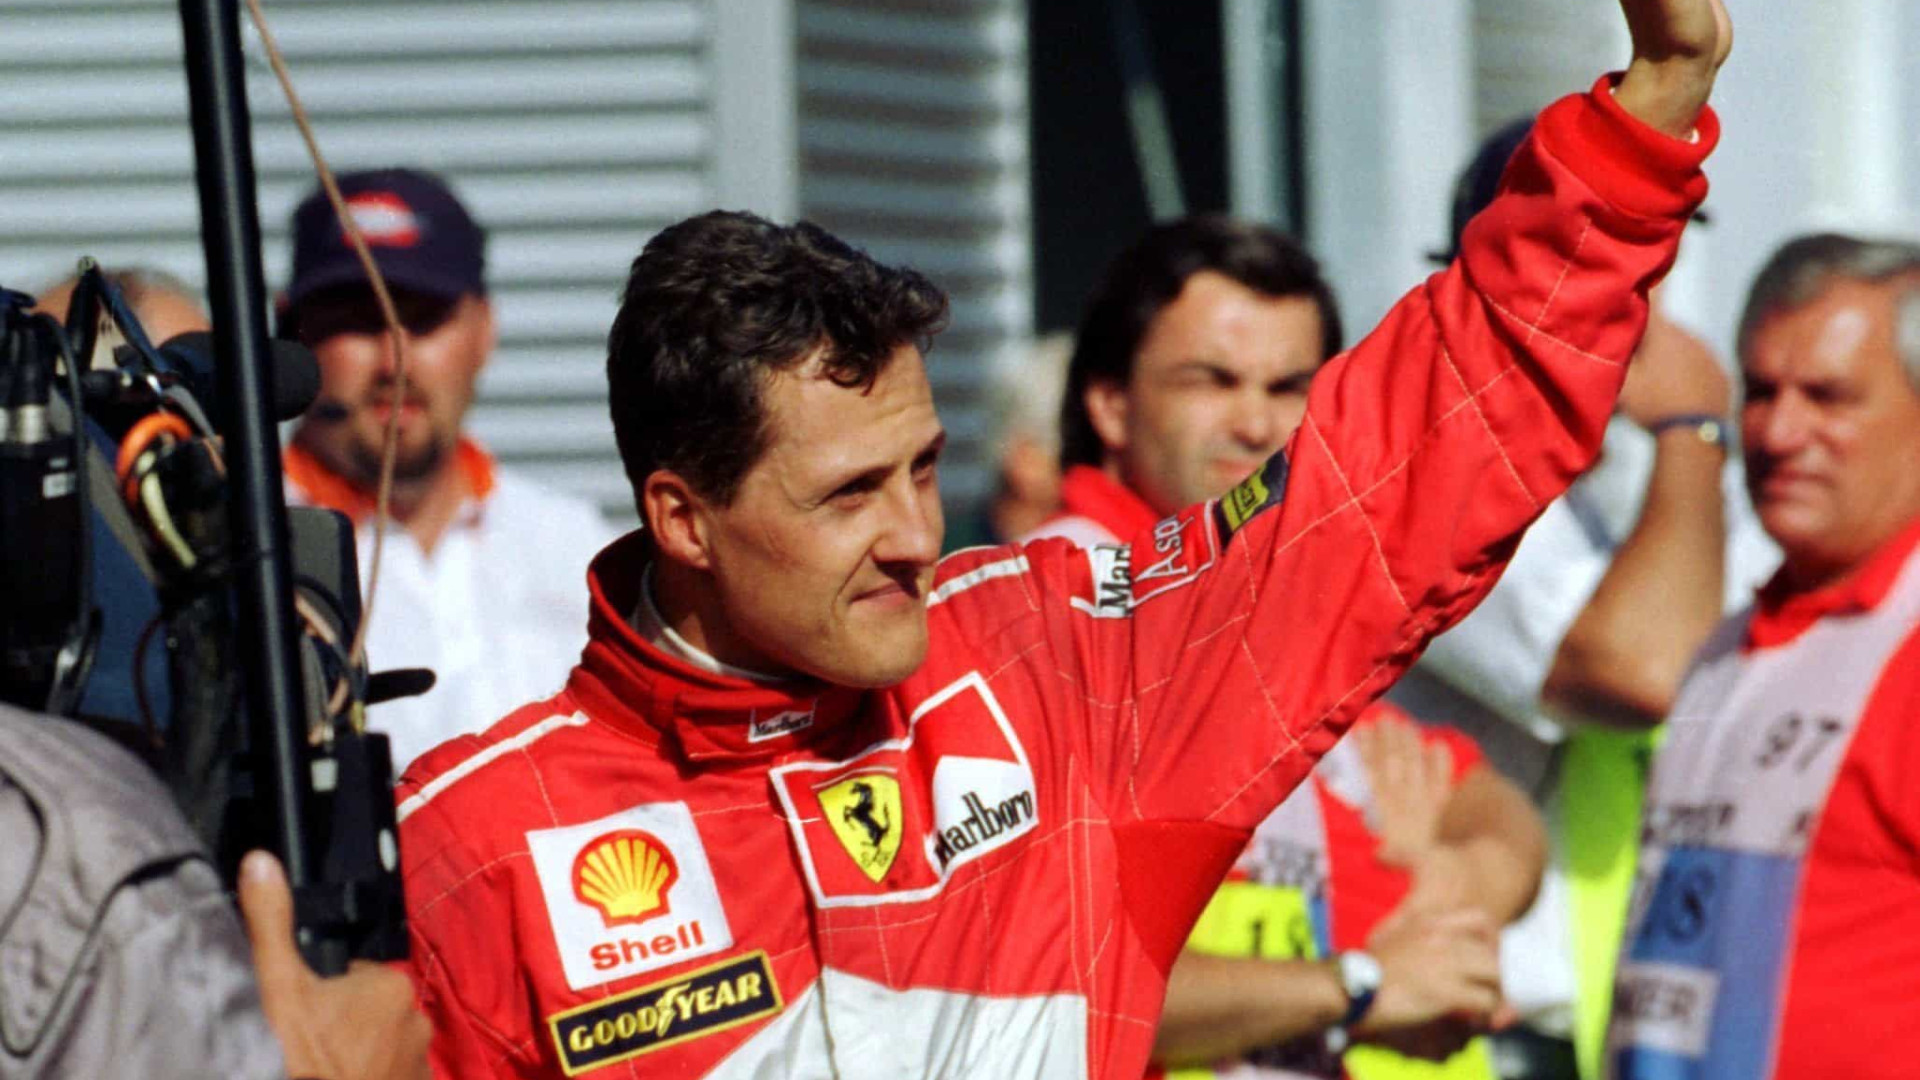 Família coloca relógios de Schumacher à venda: "Motivo é desconhecido"